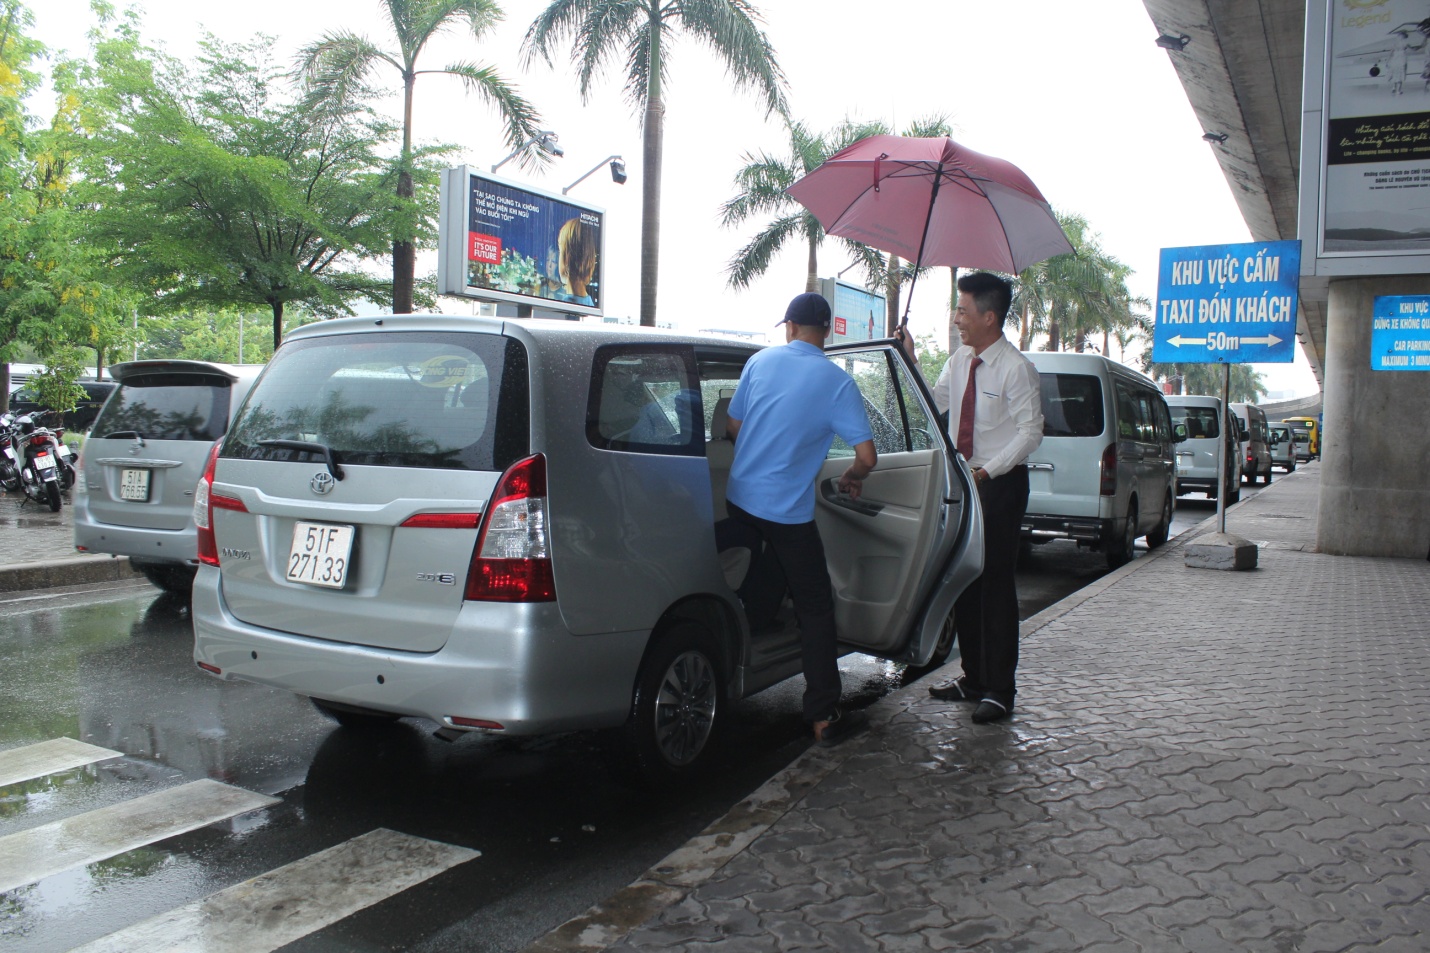 Thuê xe taxi đi liên tỉnh giá rẻ TPHCM có nhiều ưu điểm vượt trội